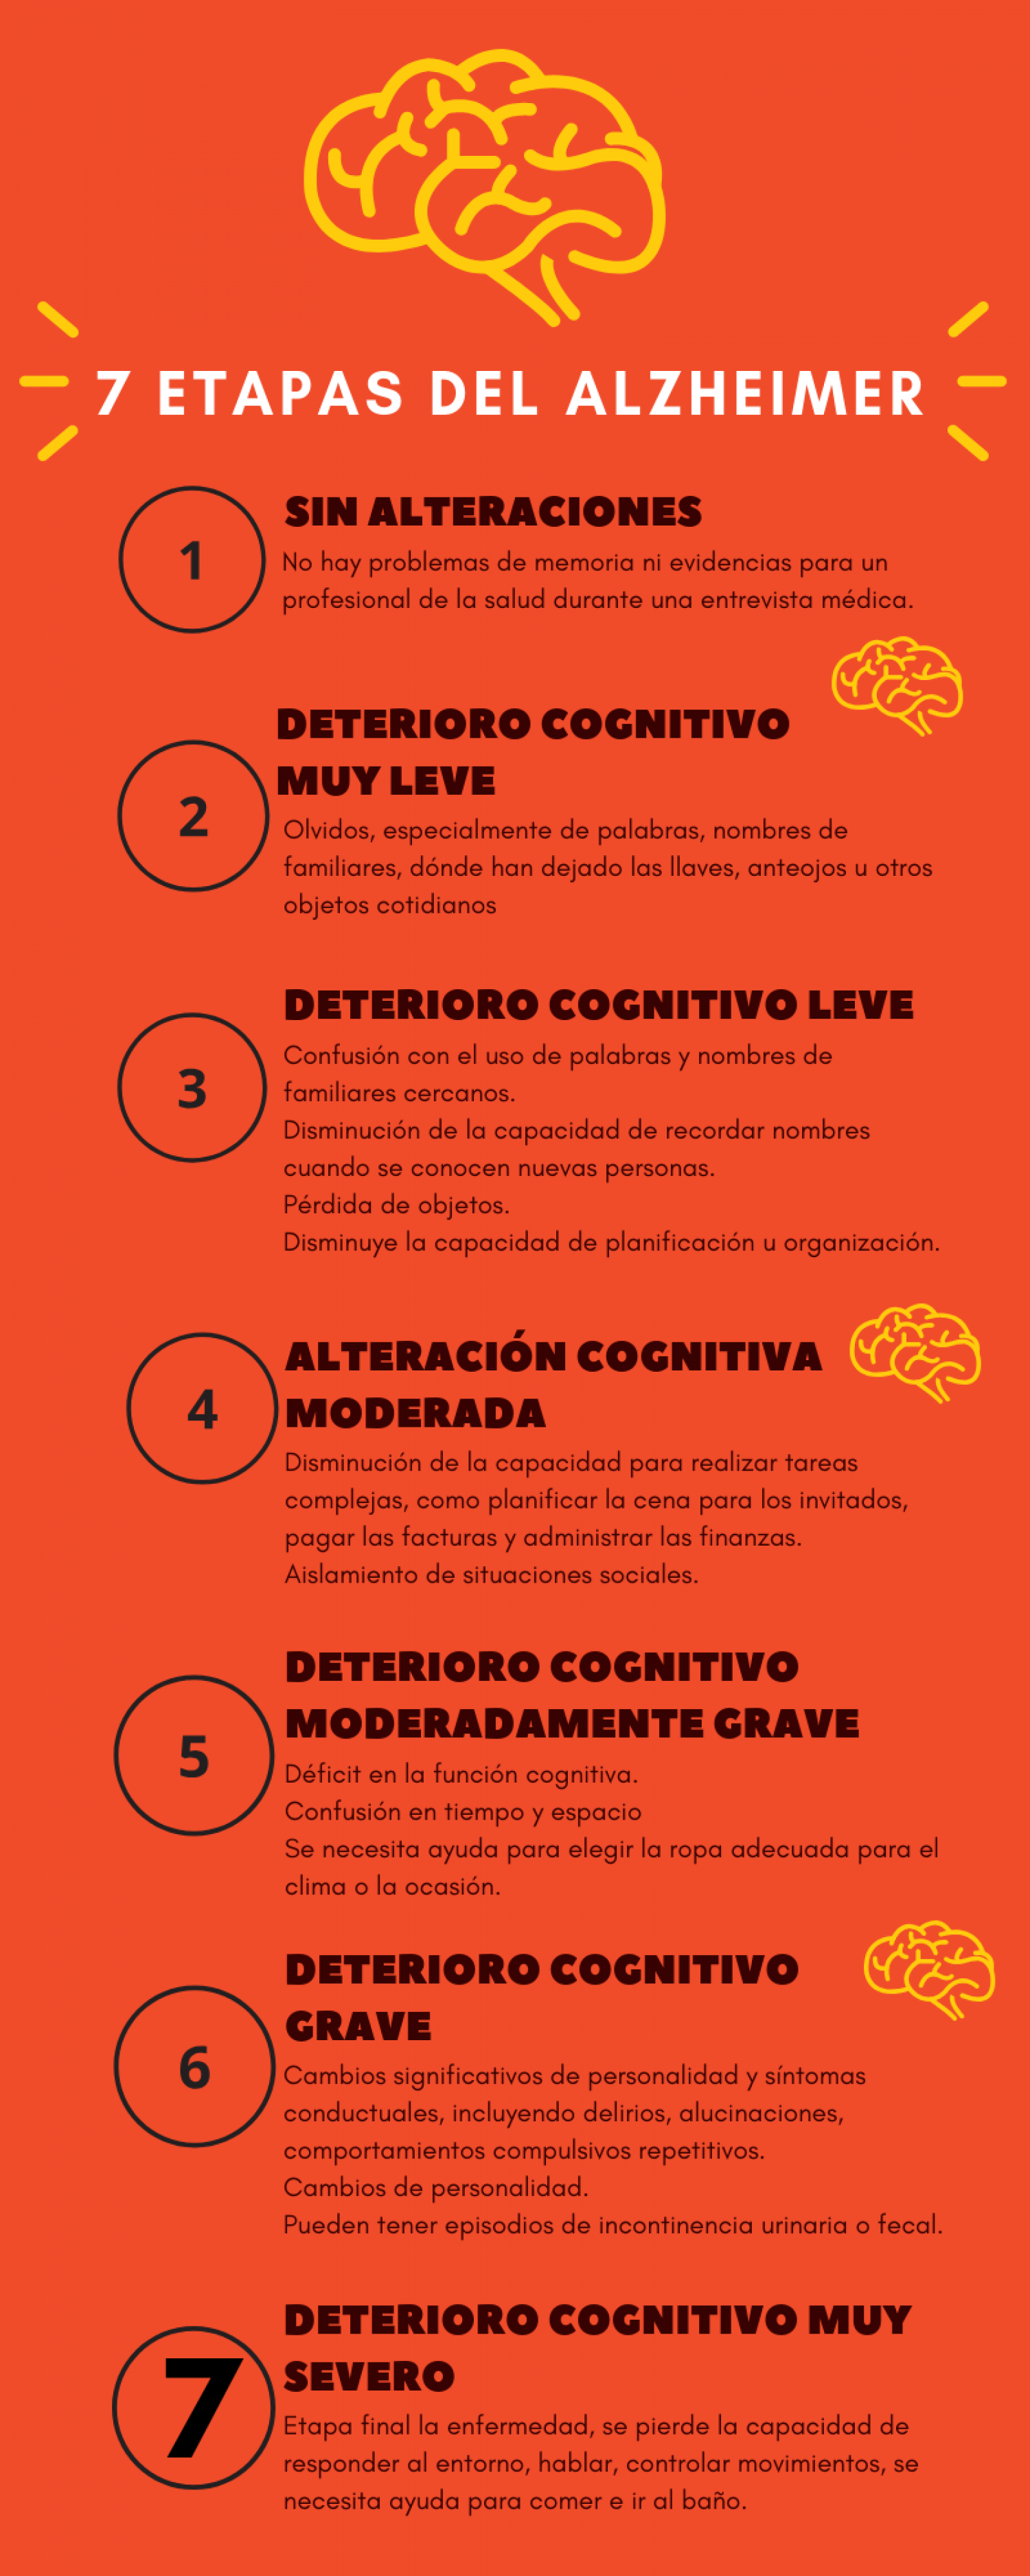 7 etapas del Alzheimer Infographic